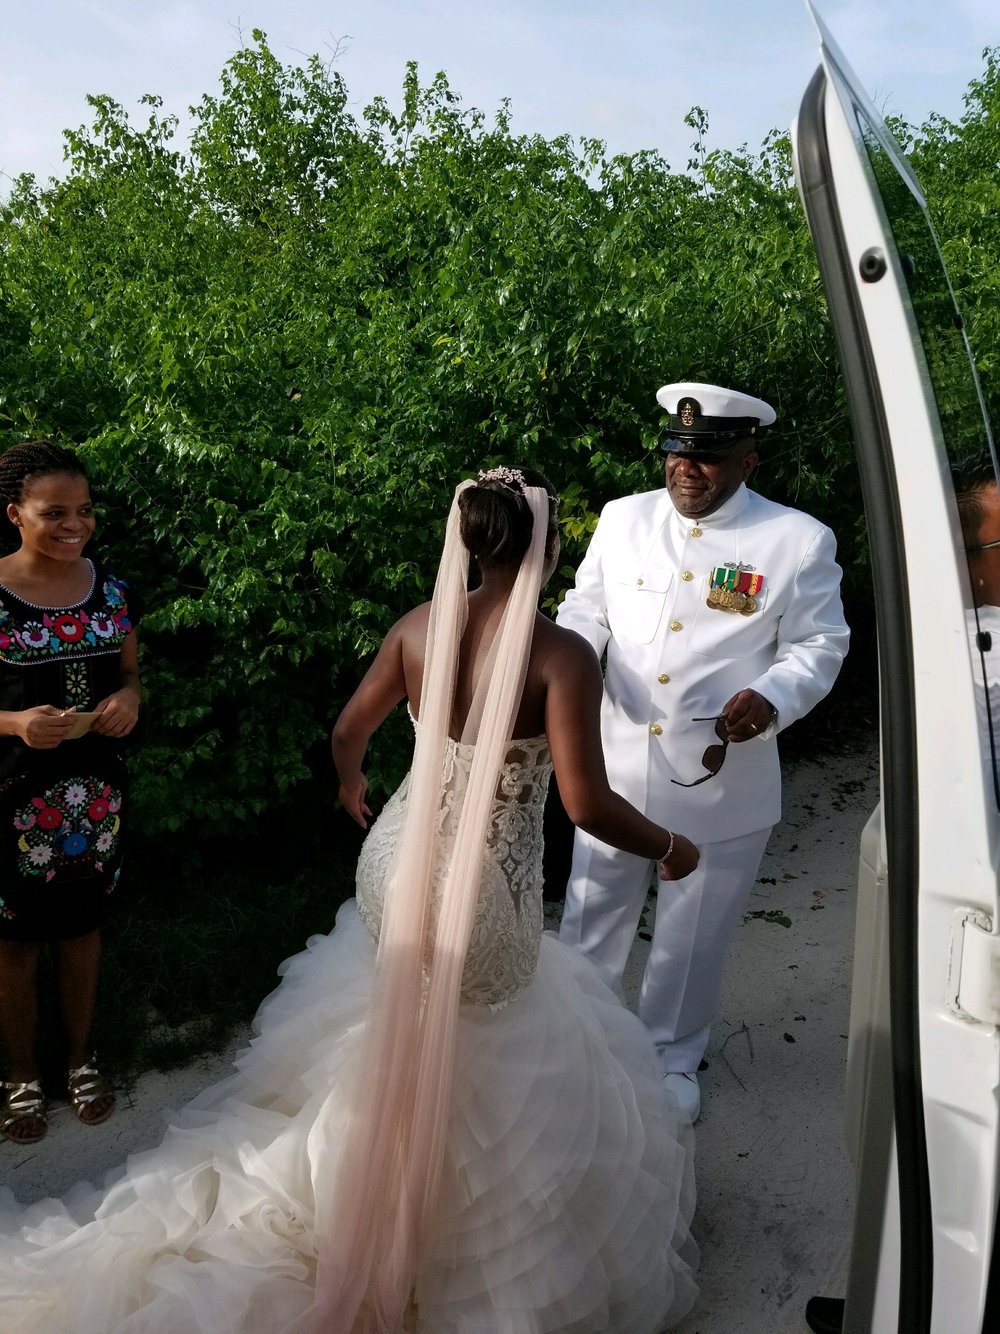 Black Destination Bride - BlackDesti Wedding Countdown Journal - Bridefriends Podcast - 0 Playa del Carmen Mexico - Blue Venado - Shenko Photography - Dad Navy Chief Uniform.JPG